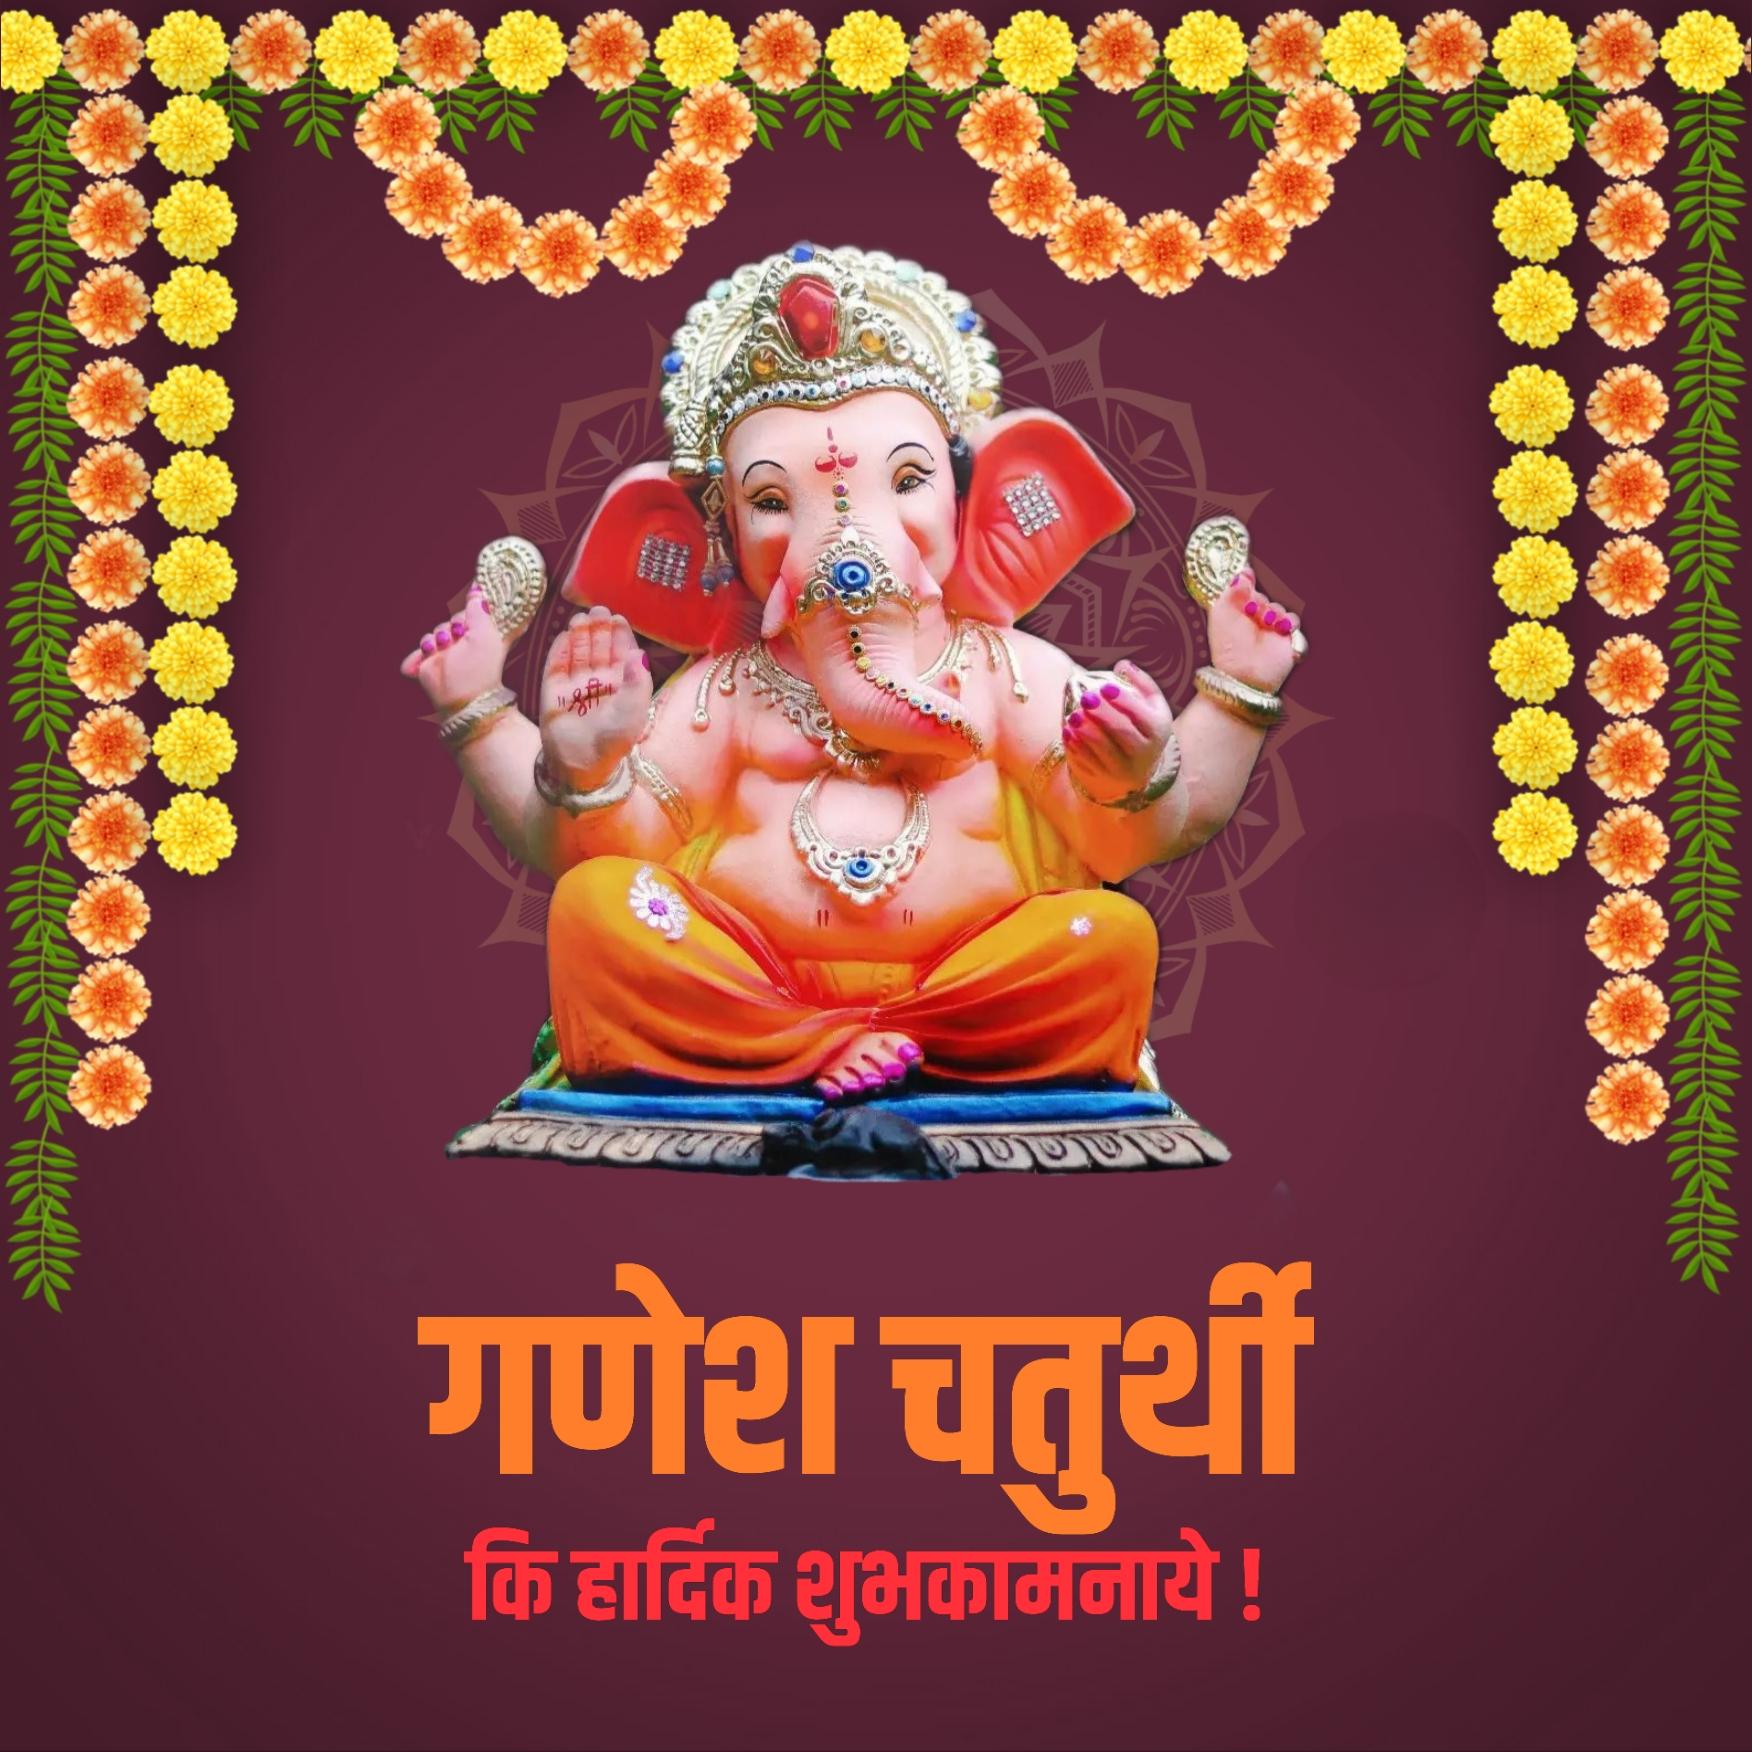 Happy Ganesh Chaturthi Hindi Images